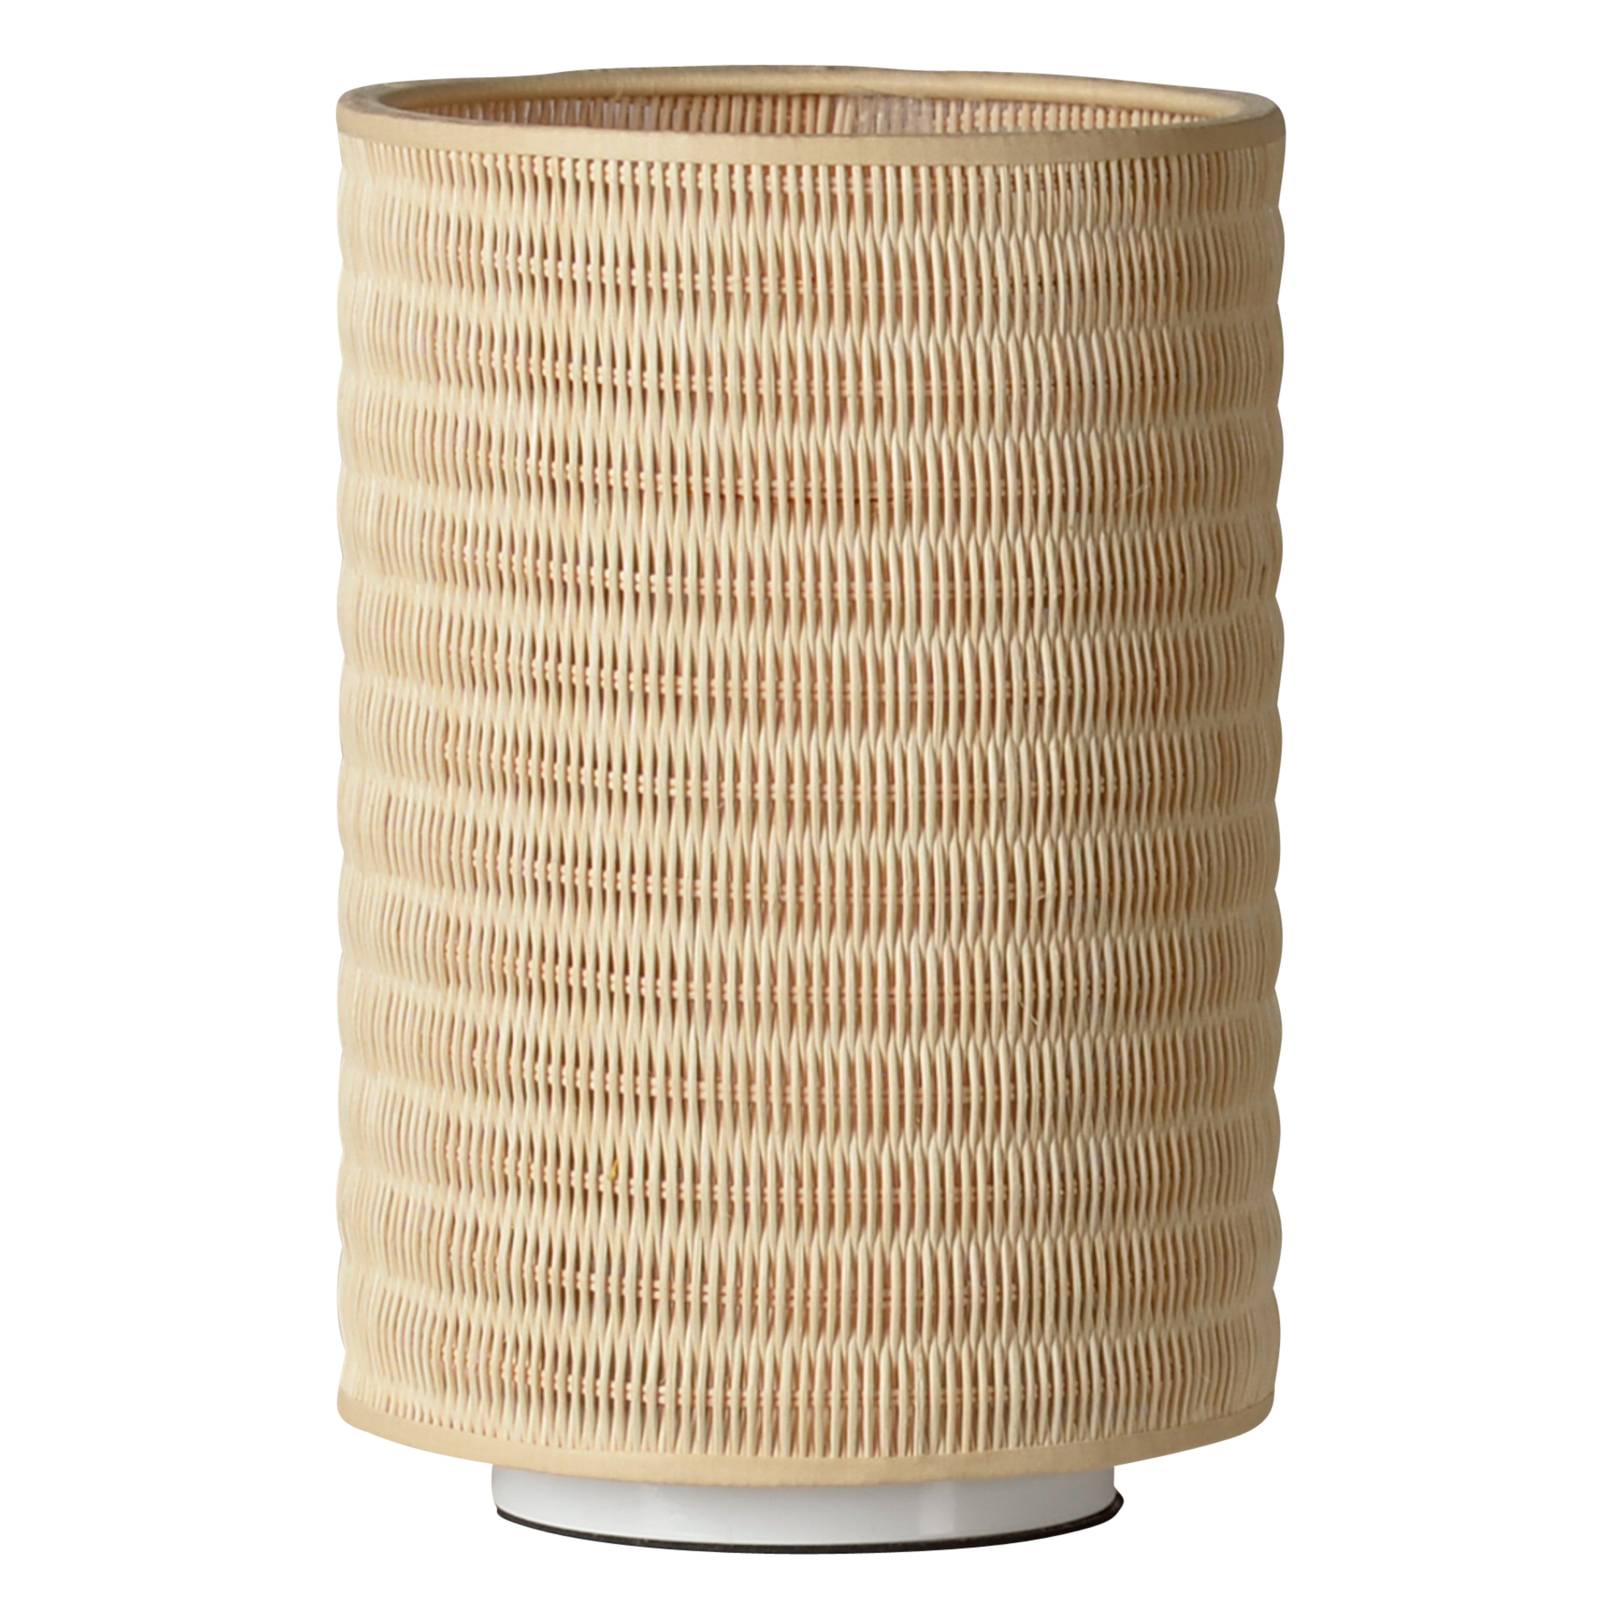 Image of Lampe à poser osier forme cylindrique en rotin 705632056271